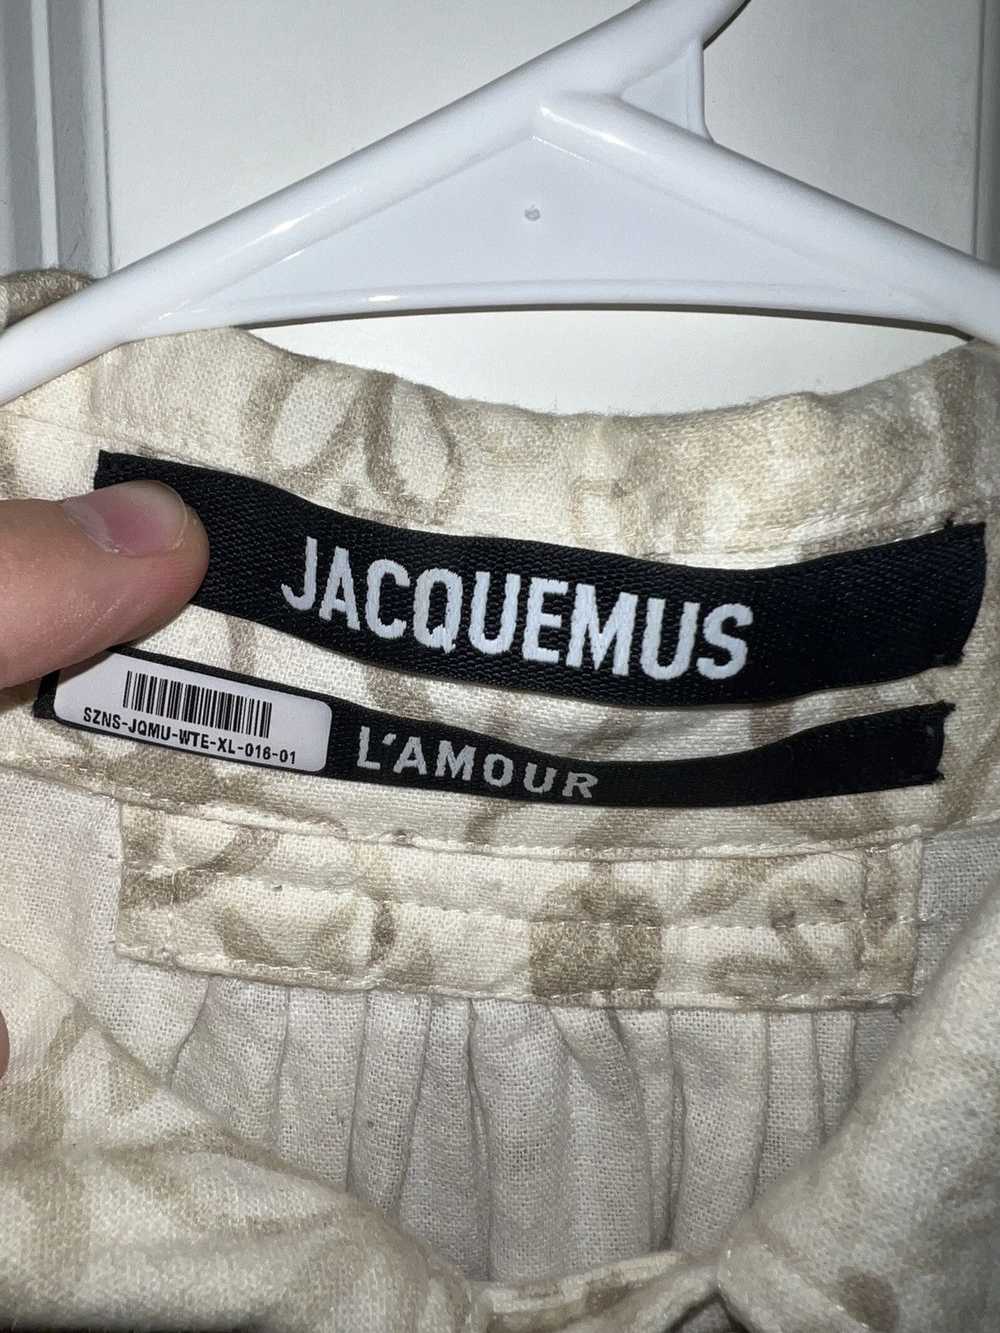 Jacquemus Jacquemus La Chemise Tan Button-Up - image 3